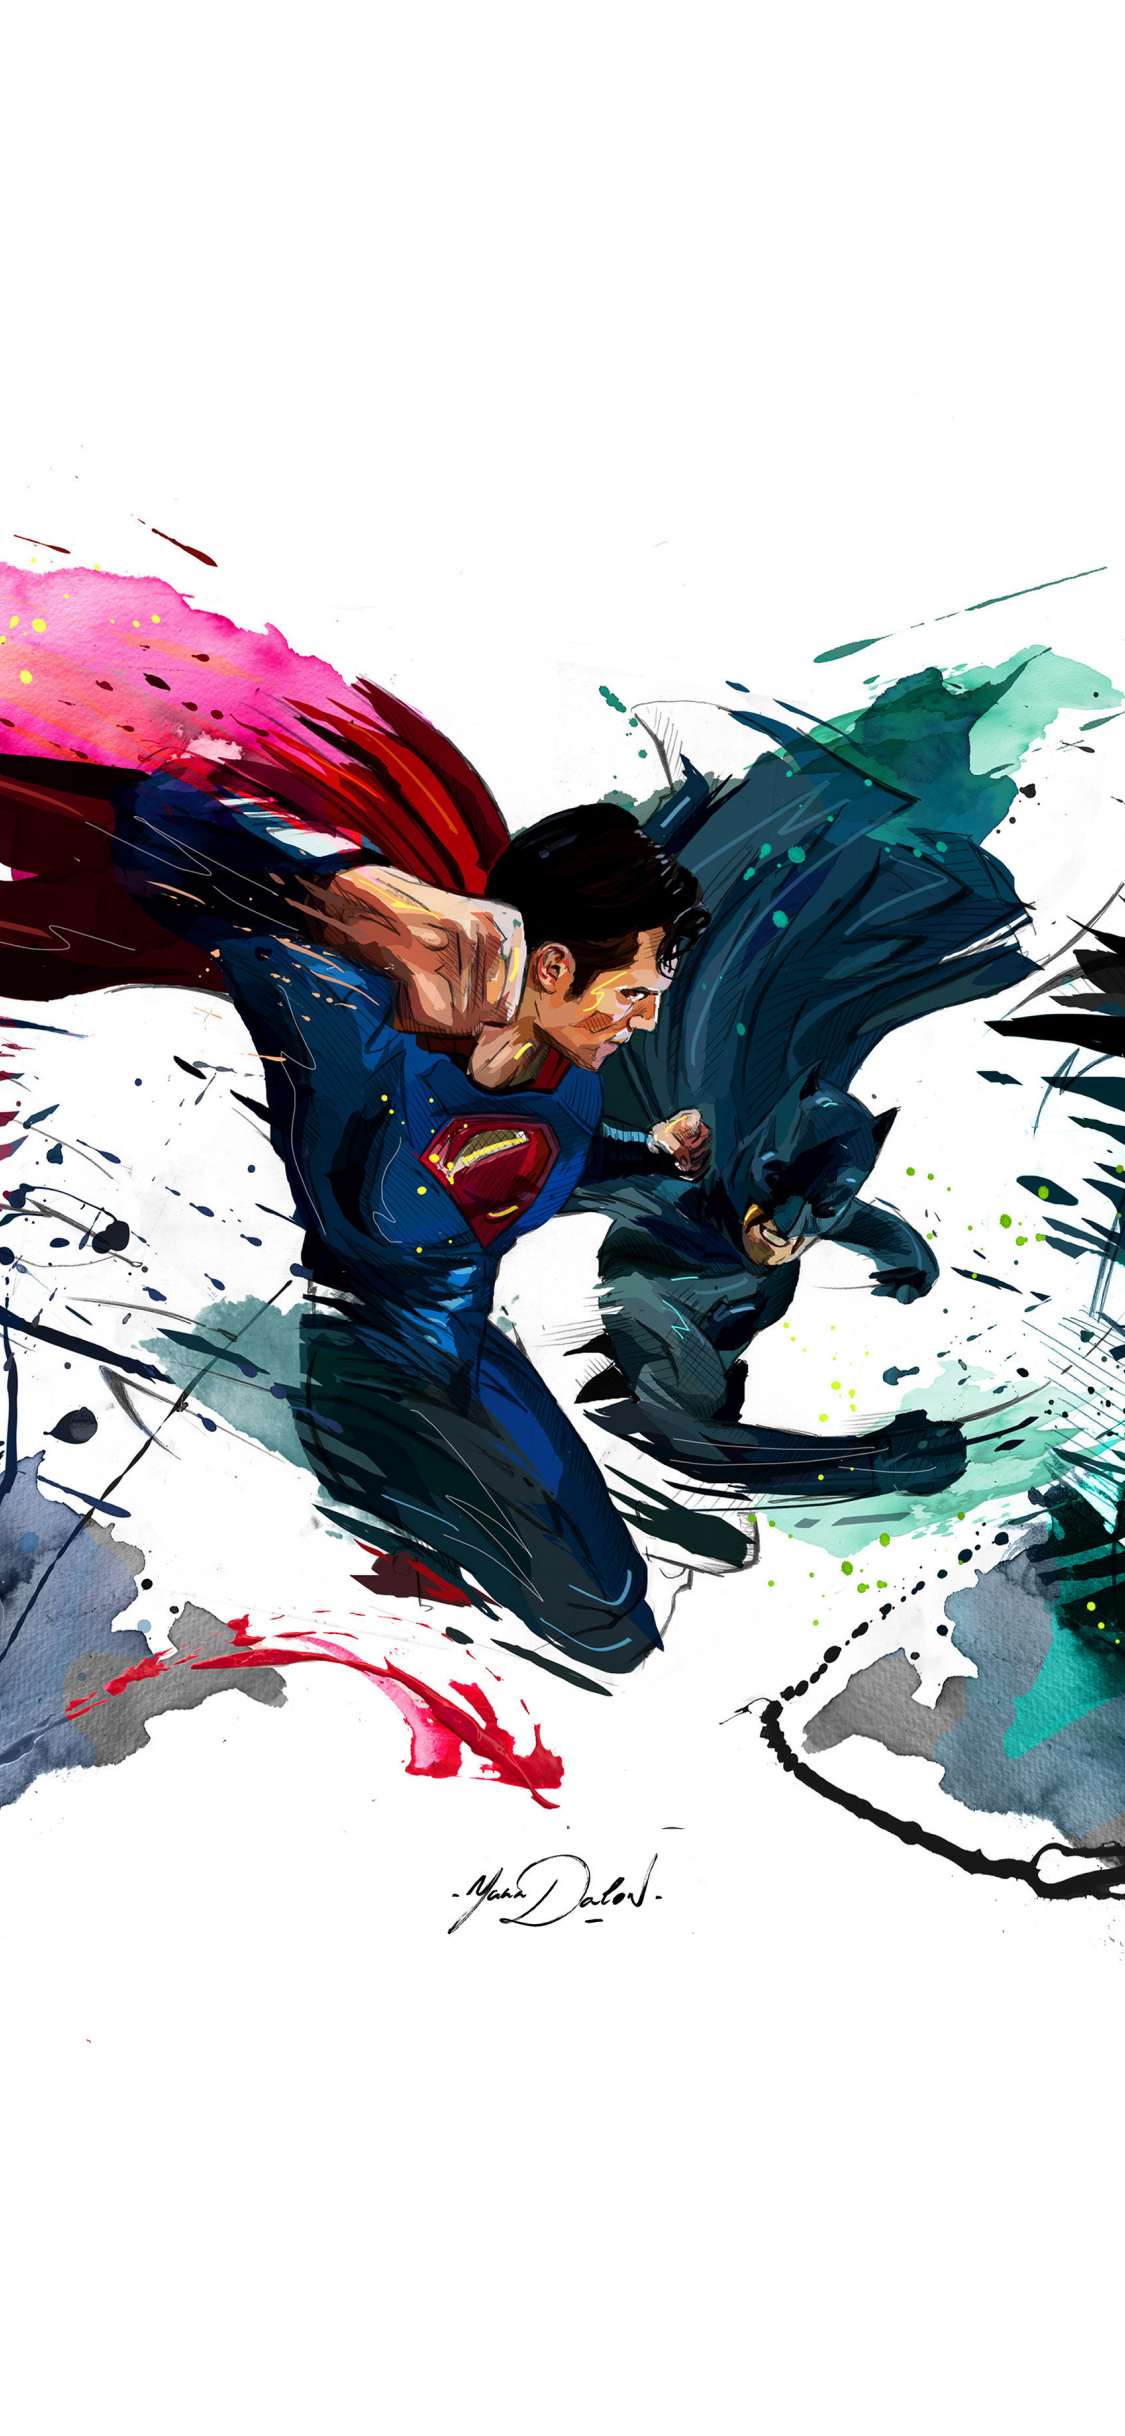 Batman vs superman, 4k, sketch artwork, 1125x2436 wallpaper